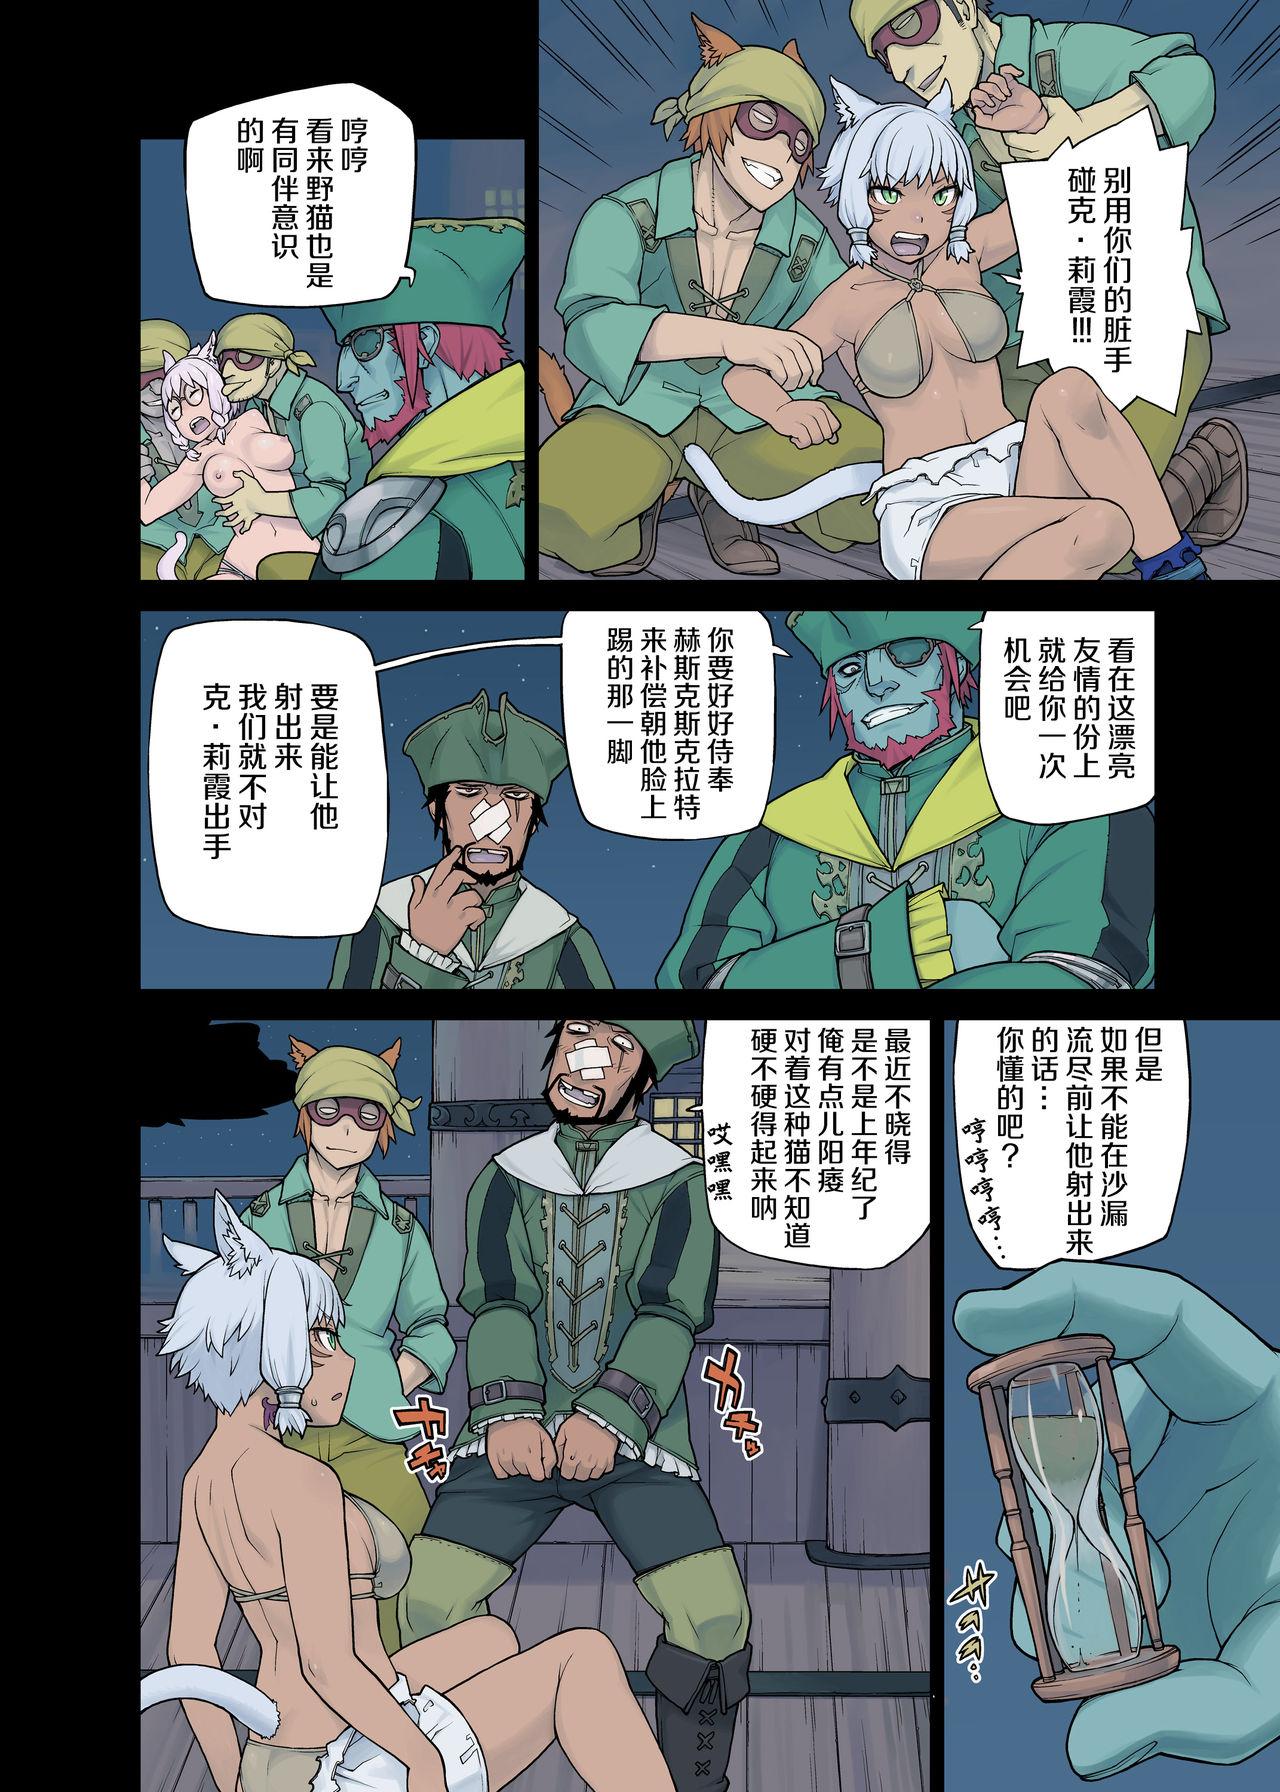 Bunduda Neko Daisuki XIV - Final fantasy xiv Gay Hairy - Page 12